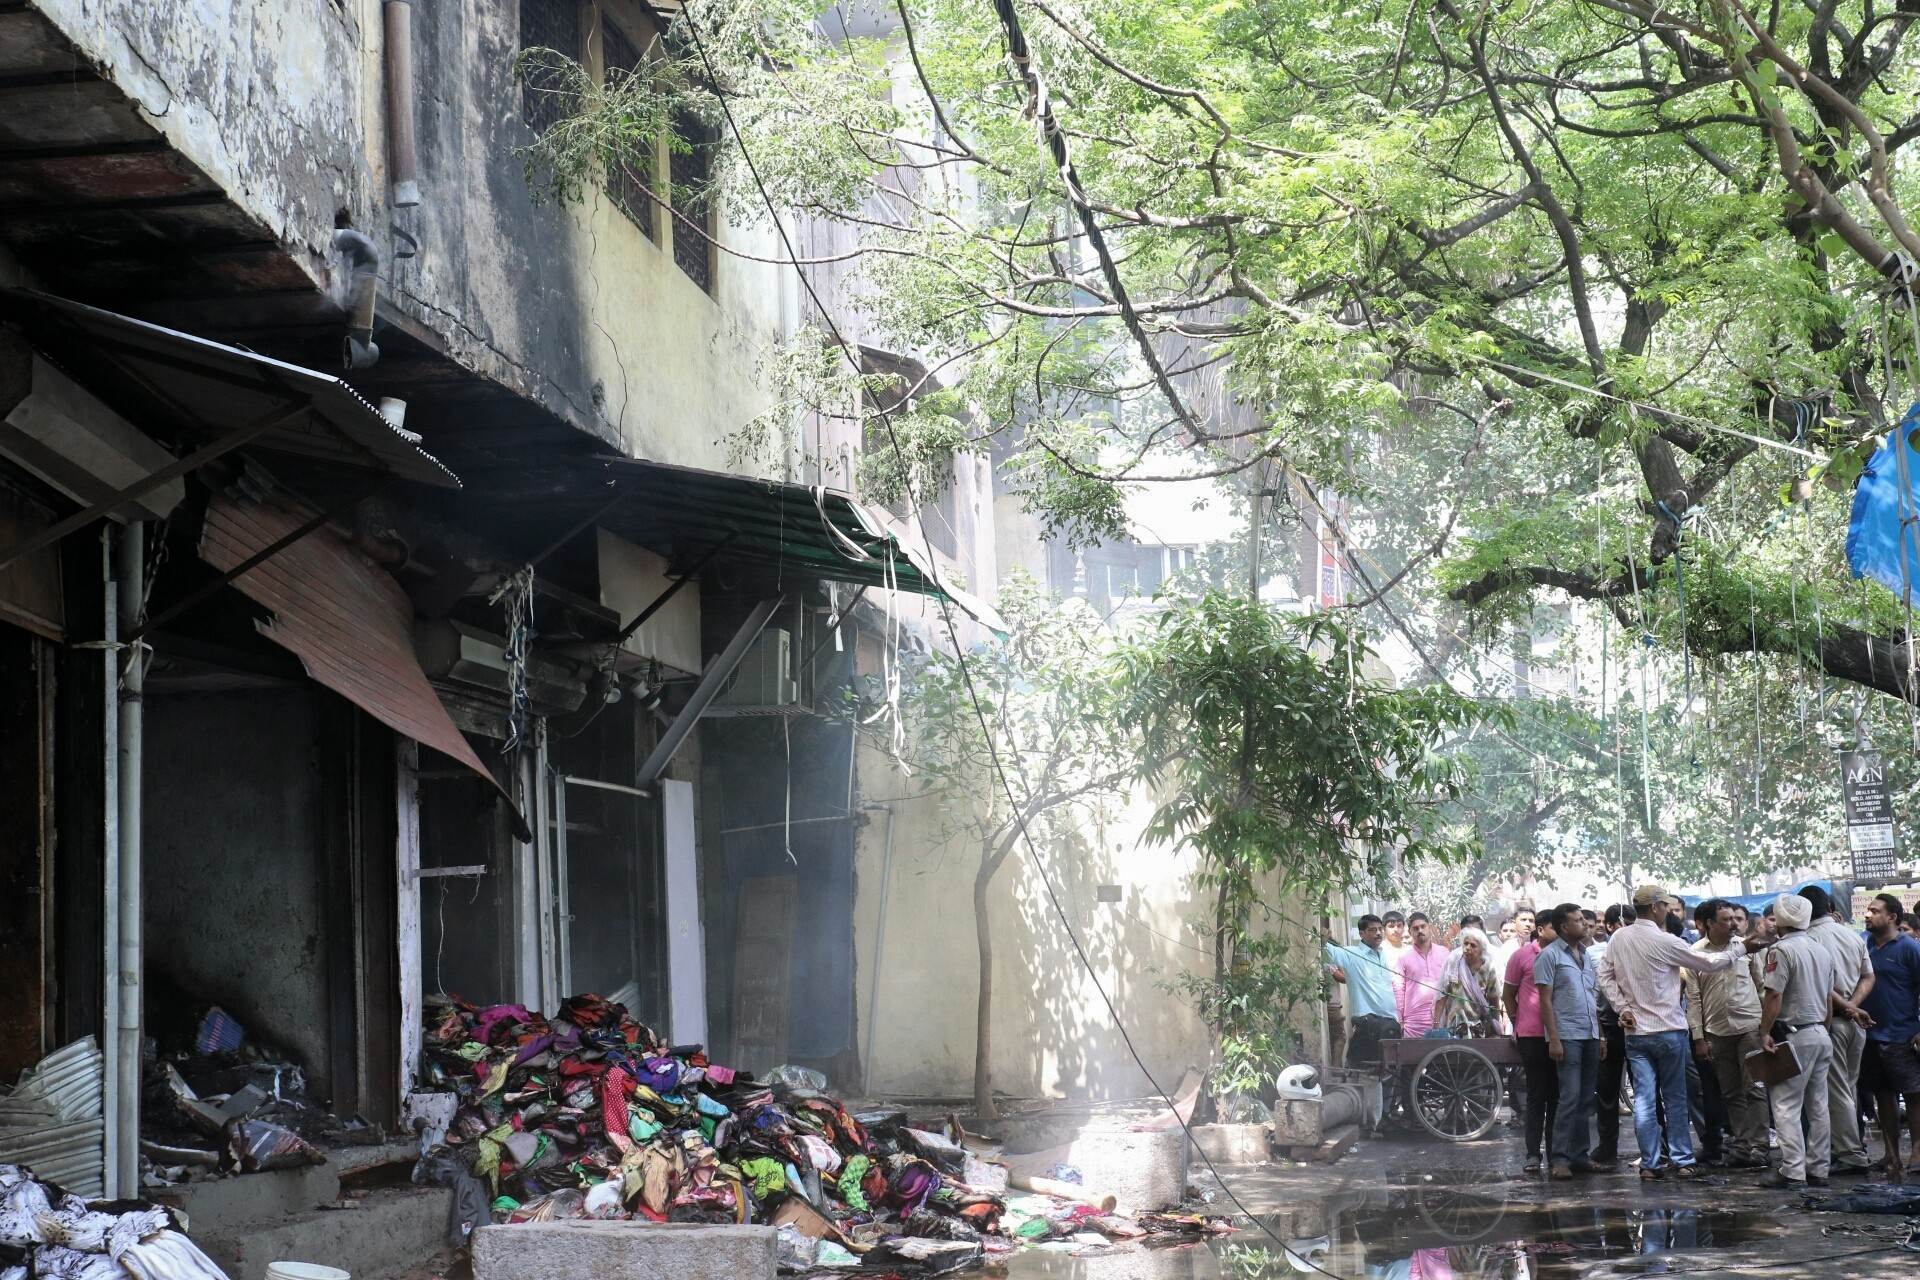 दिल्ली के चांदनी चौक में लगी आग, 80 दुकानें जलीं, देखें तस्वीरें